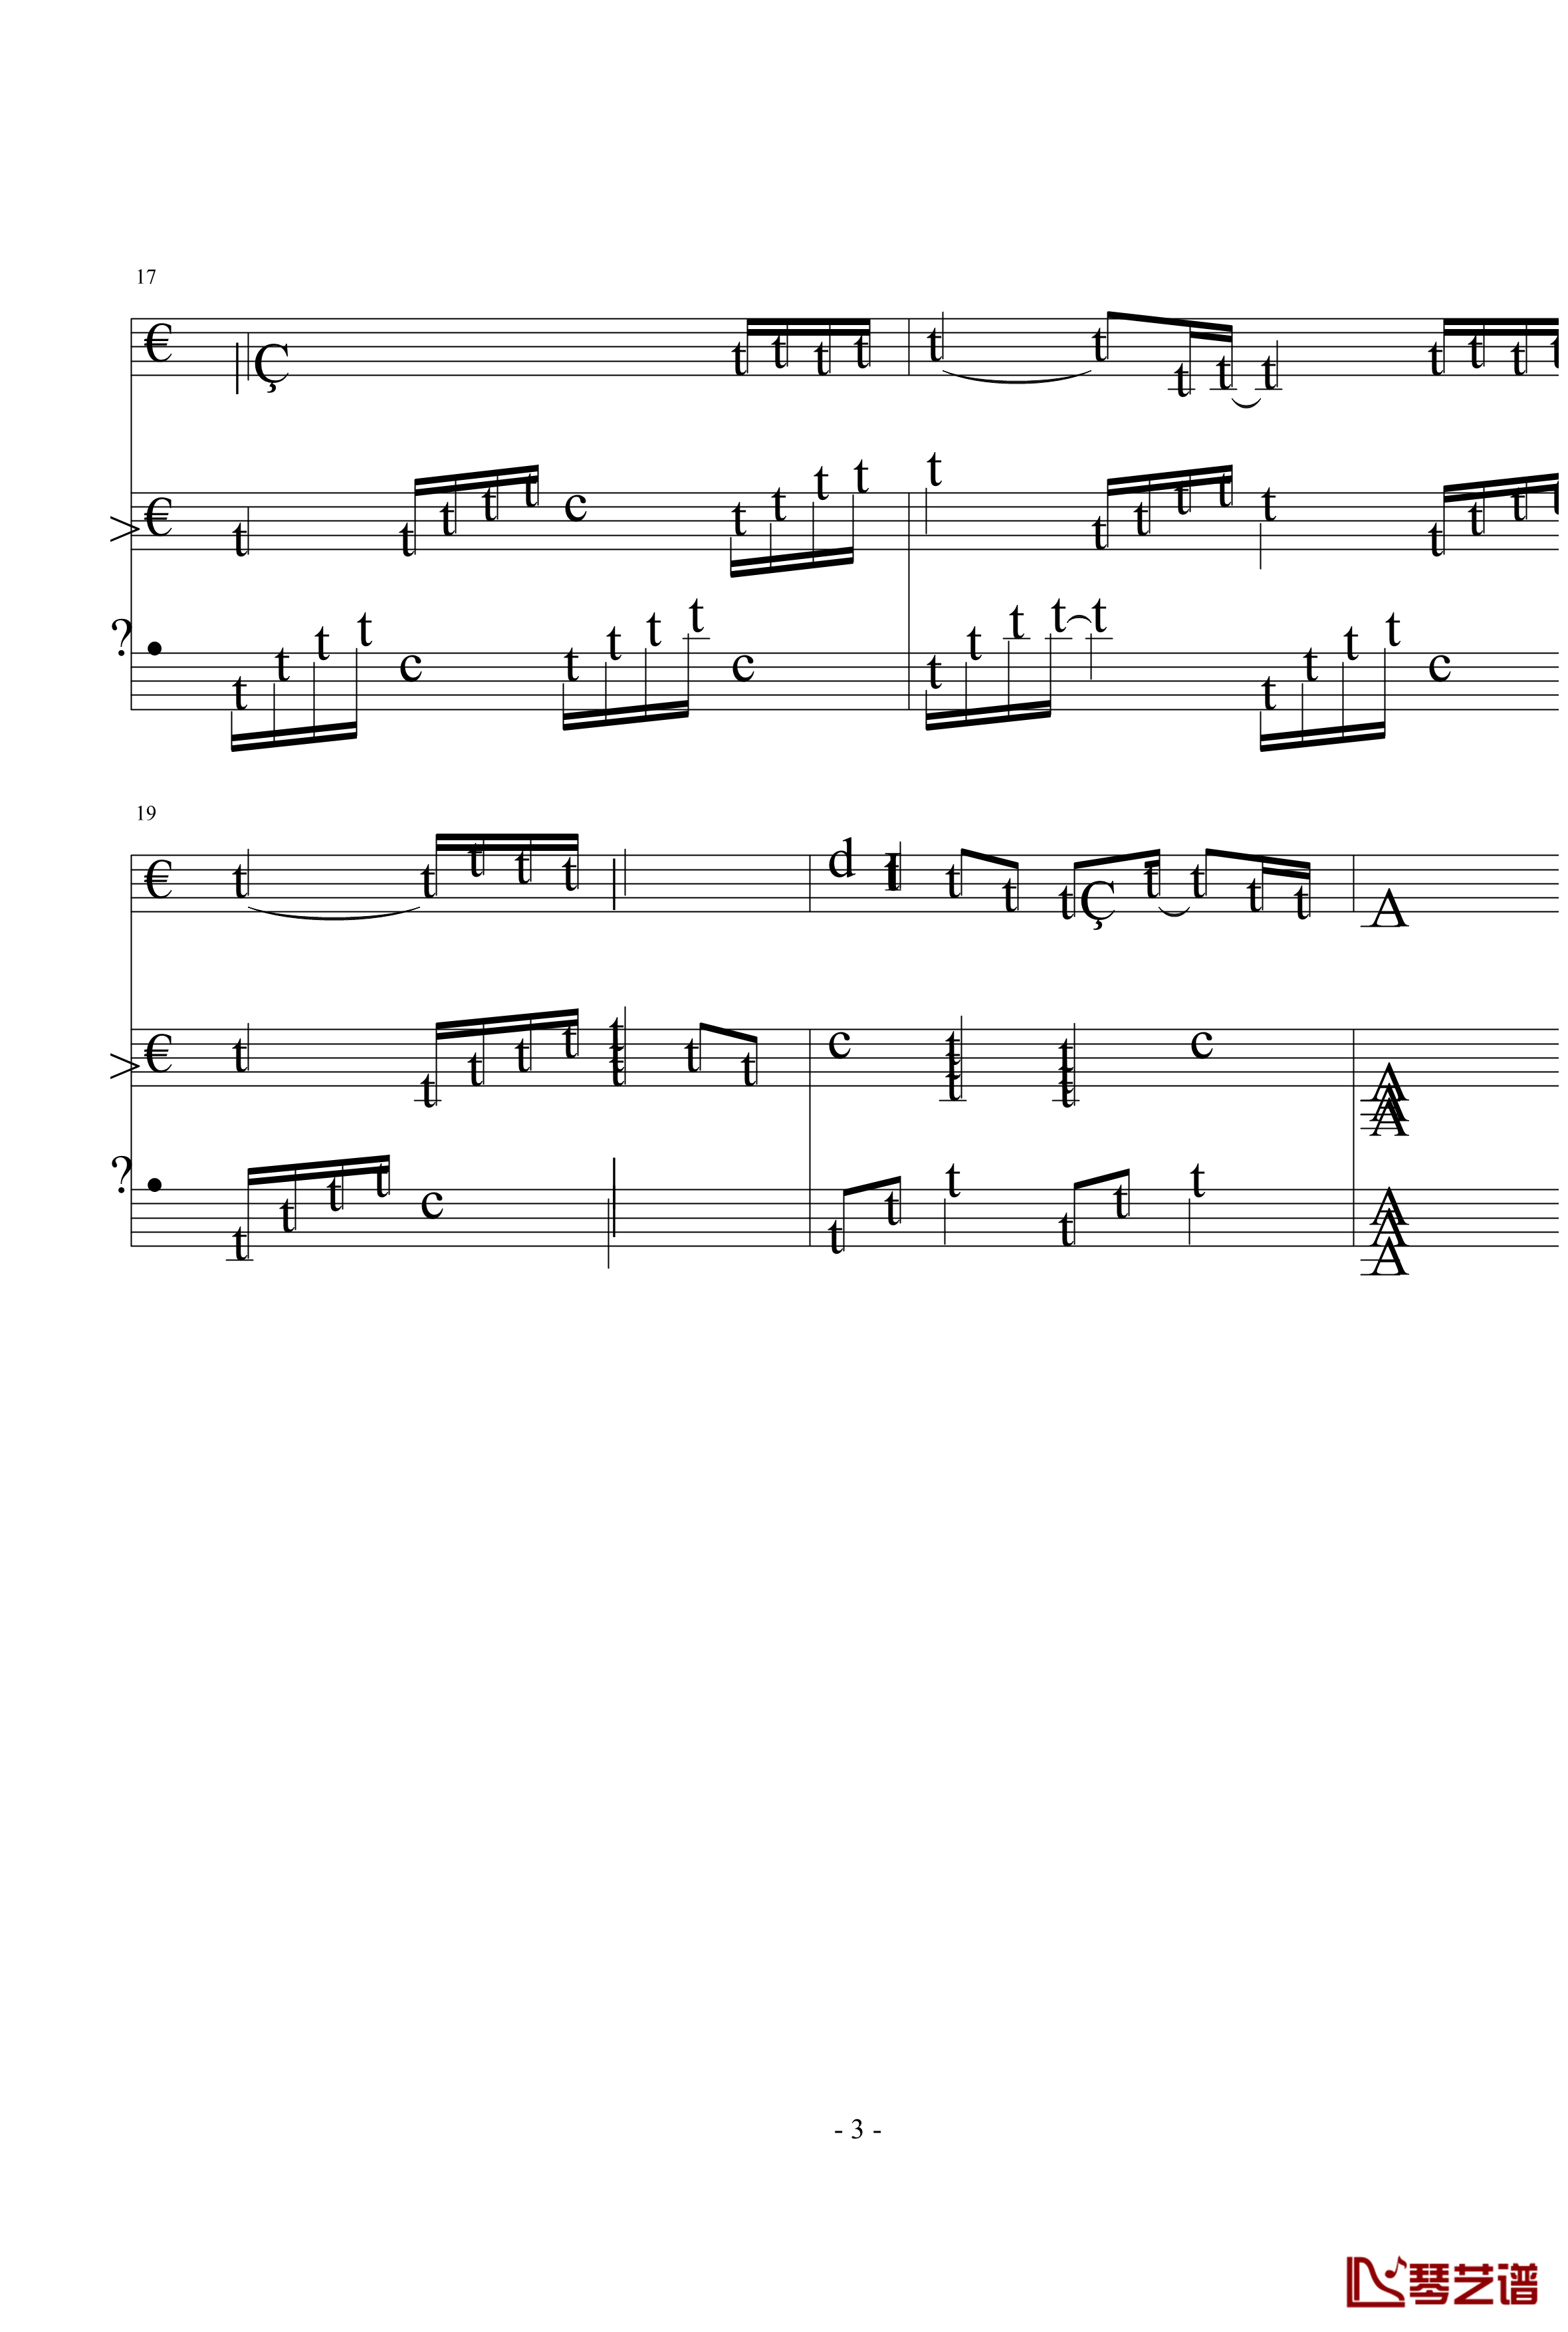 一首简单的歌钢琴谱-未央歌3